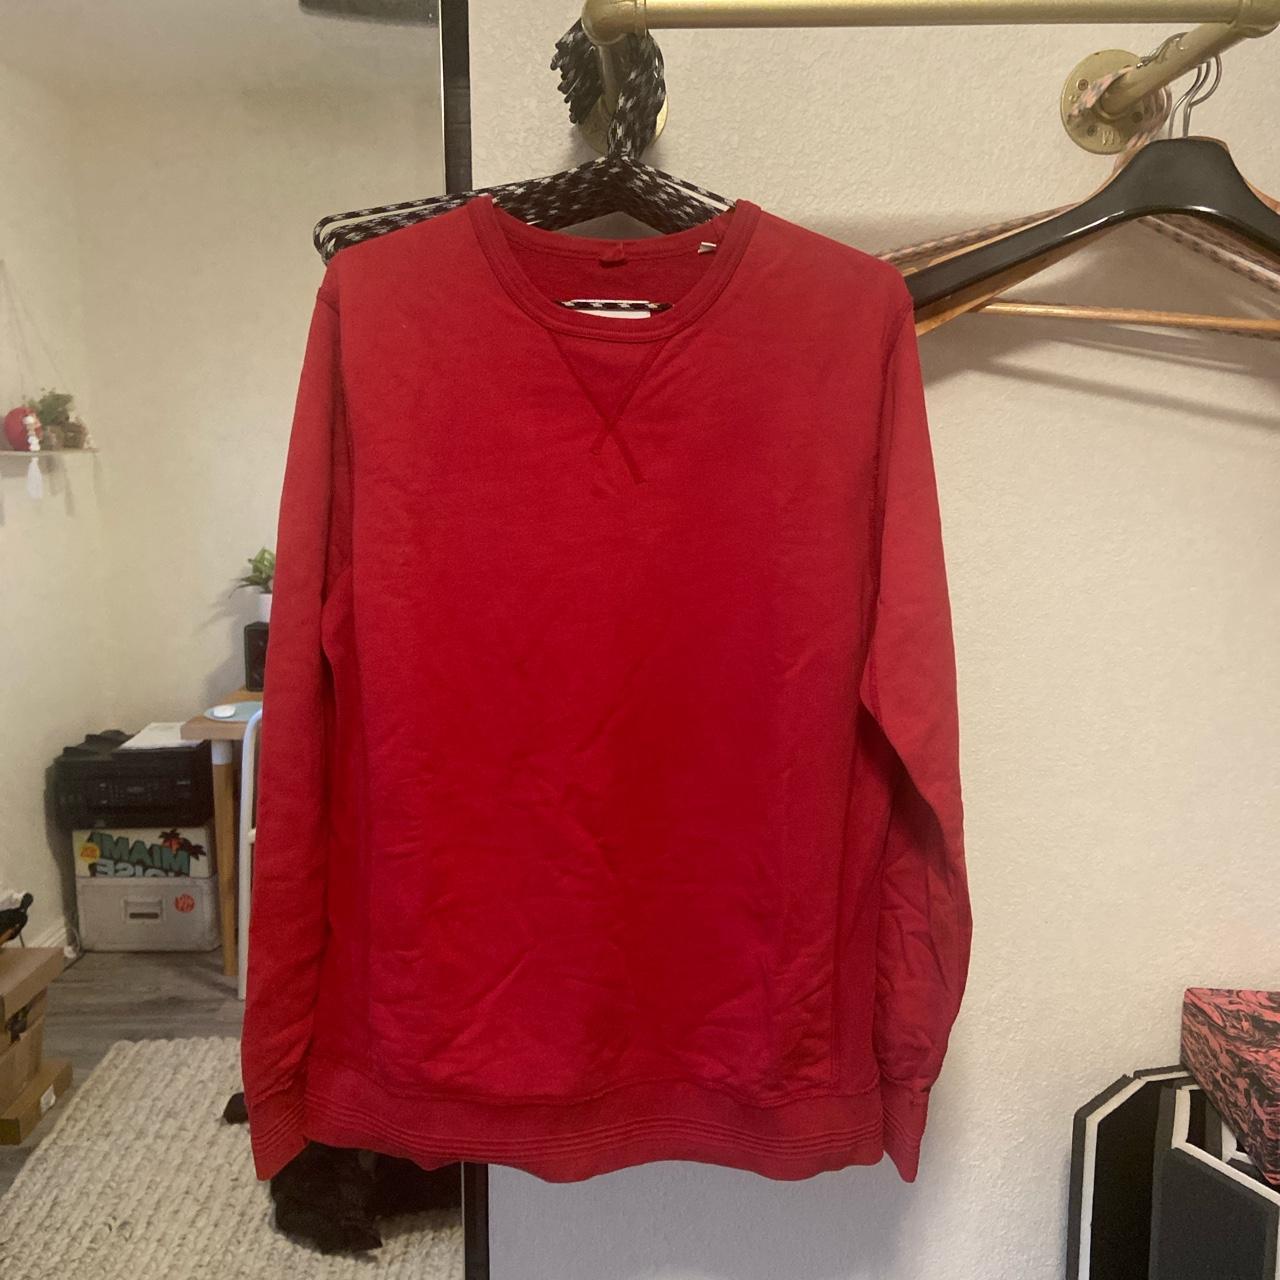 Product Image 1 - #albam sweatshirt - red -